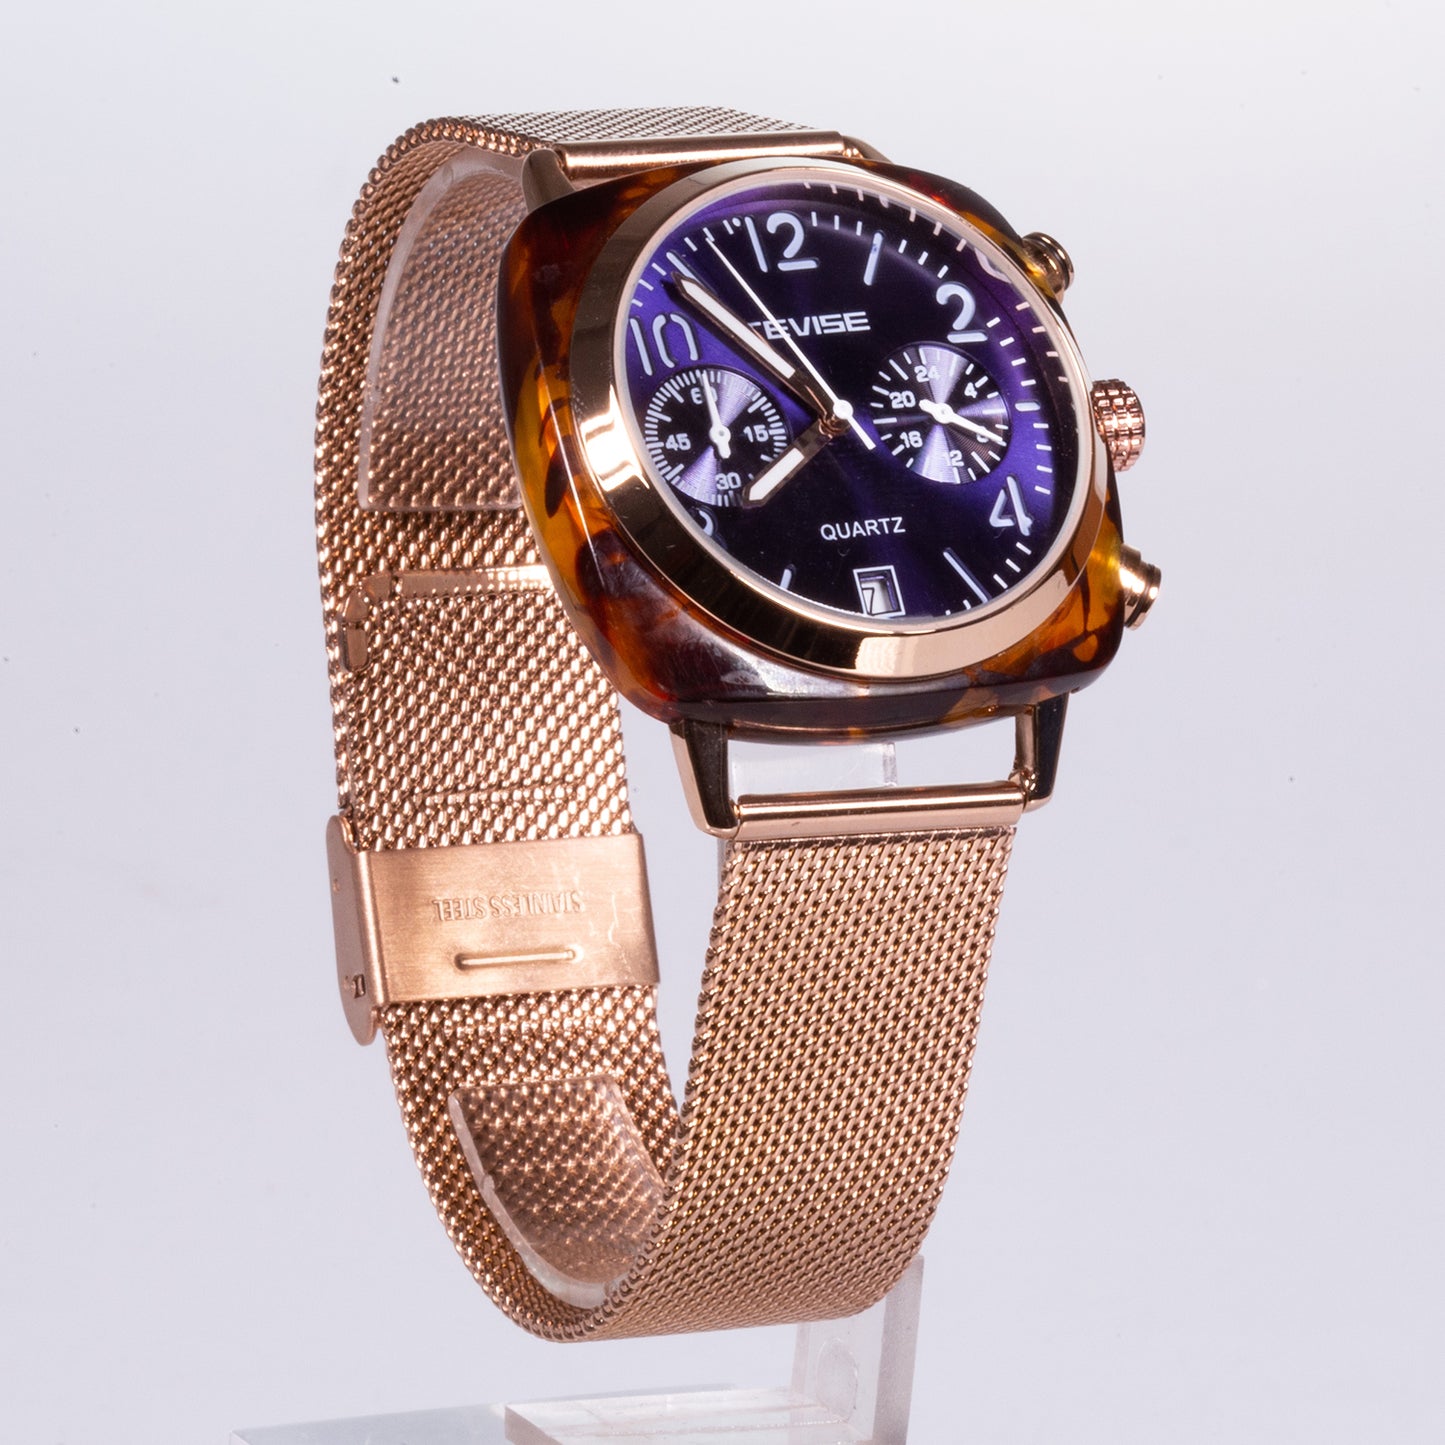 Relógio em Aço Inoxidável com Esfera Azul, Caixa e Bracelete Douradas